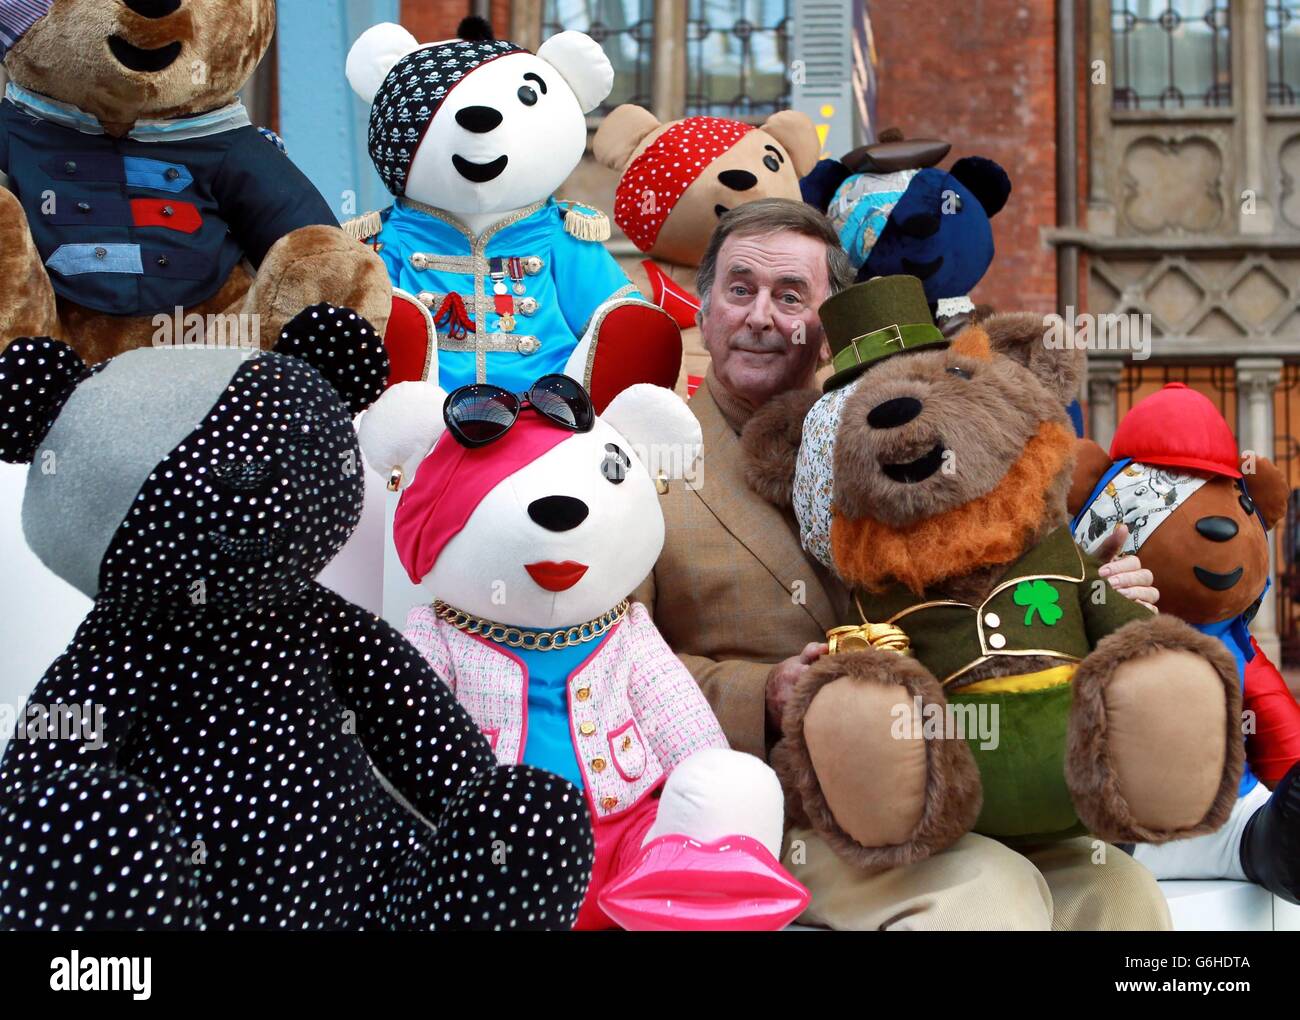 Terry Wogan présente la collection d'ours Pudsey conçus par des célébrités à la gare internationale de St Pancras. Les ours doivent être mis aux enchères pour aider les enfants dans le besoin. Banque D'Images